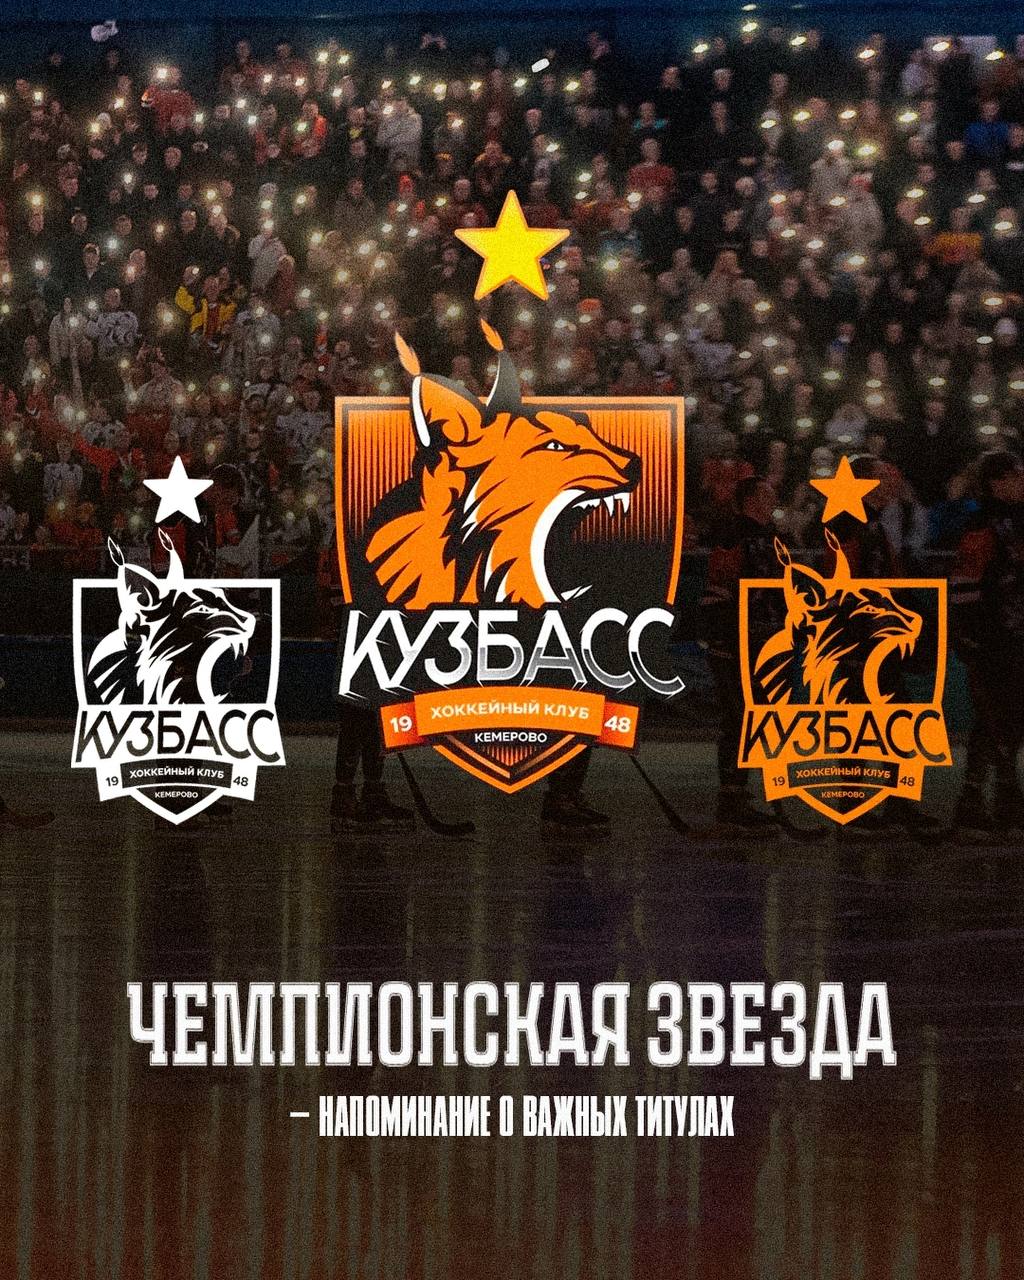 «Исторический момент»: хоккейный «Кузбасс» изменил эмблему клуба